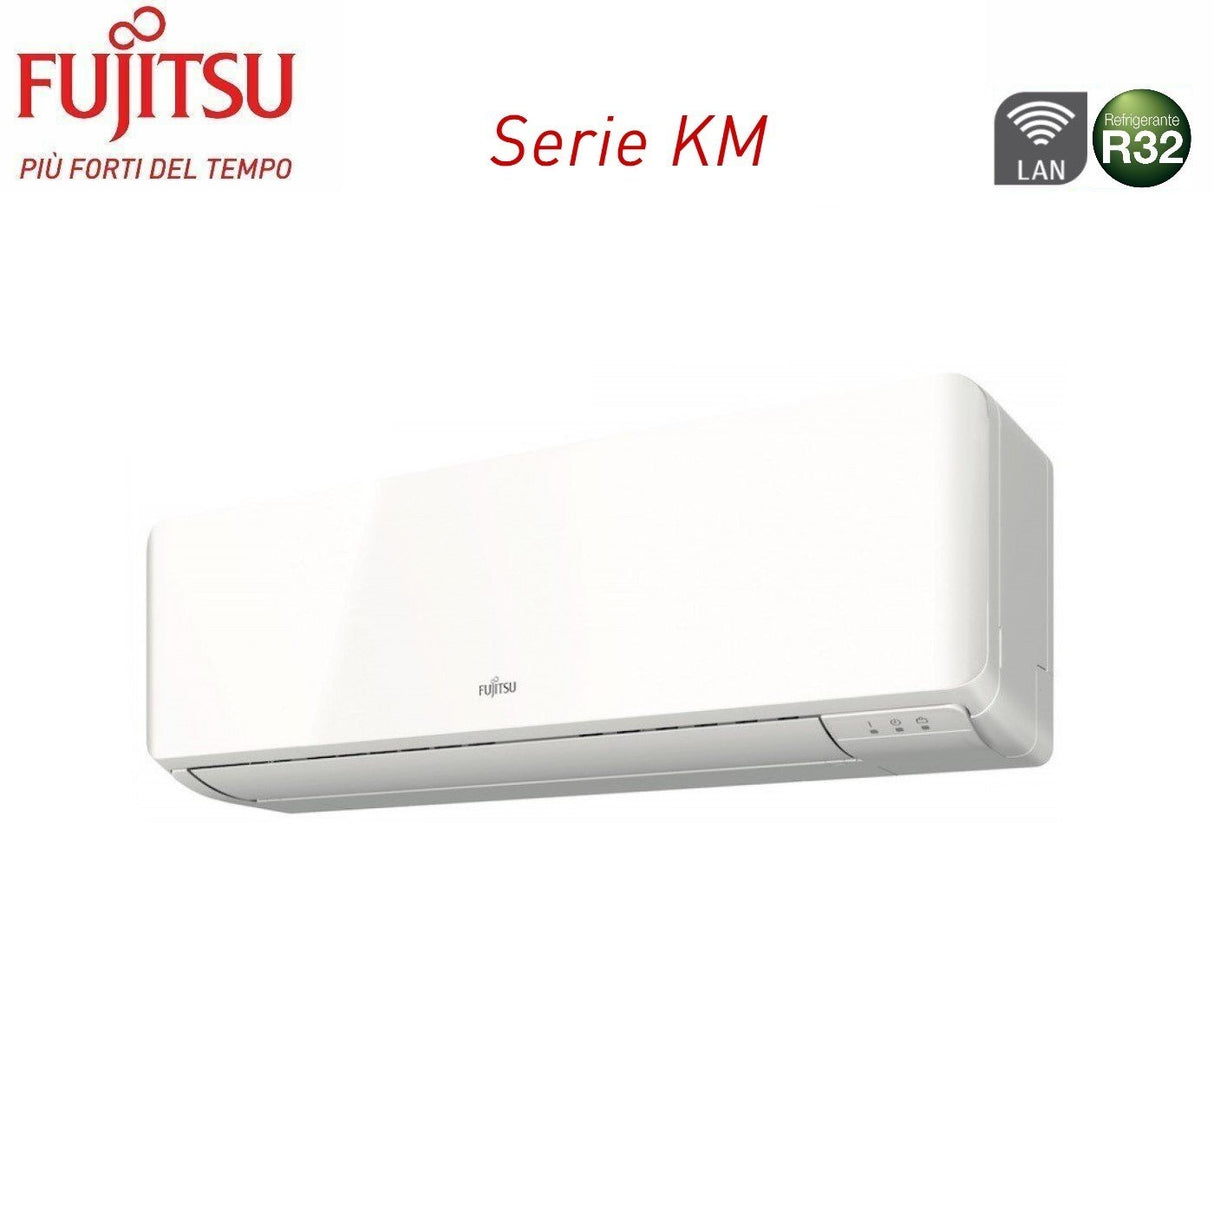 immagine-3-fujitsu-climatizzatore-condizionatore-fujitsu-dual-split-inverter-serie-km-79-con-aoyg14kbta2-r-32-wi-fi-integrato-70009000